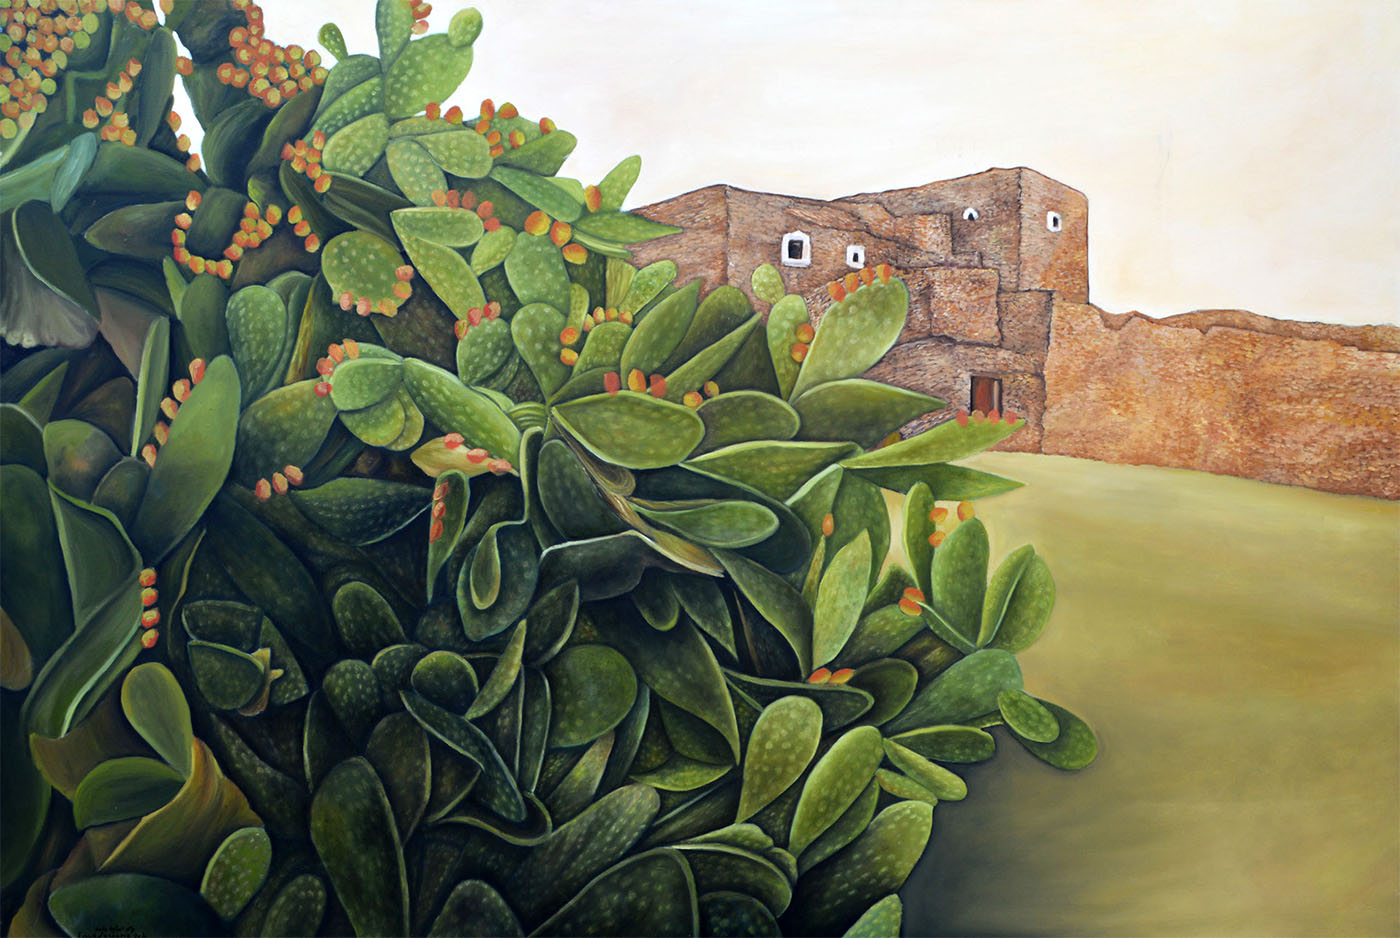 Cactus en el pueblo - óleo sobre lienzo - 120x120cm - 2010